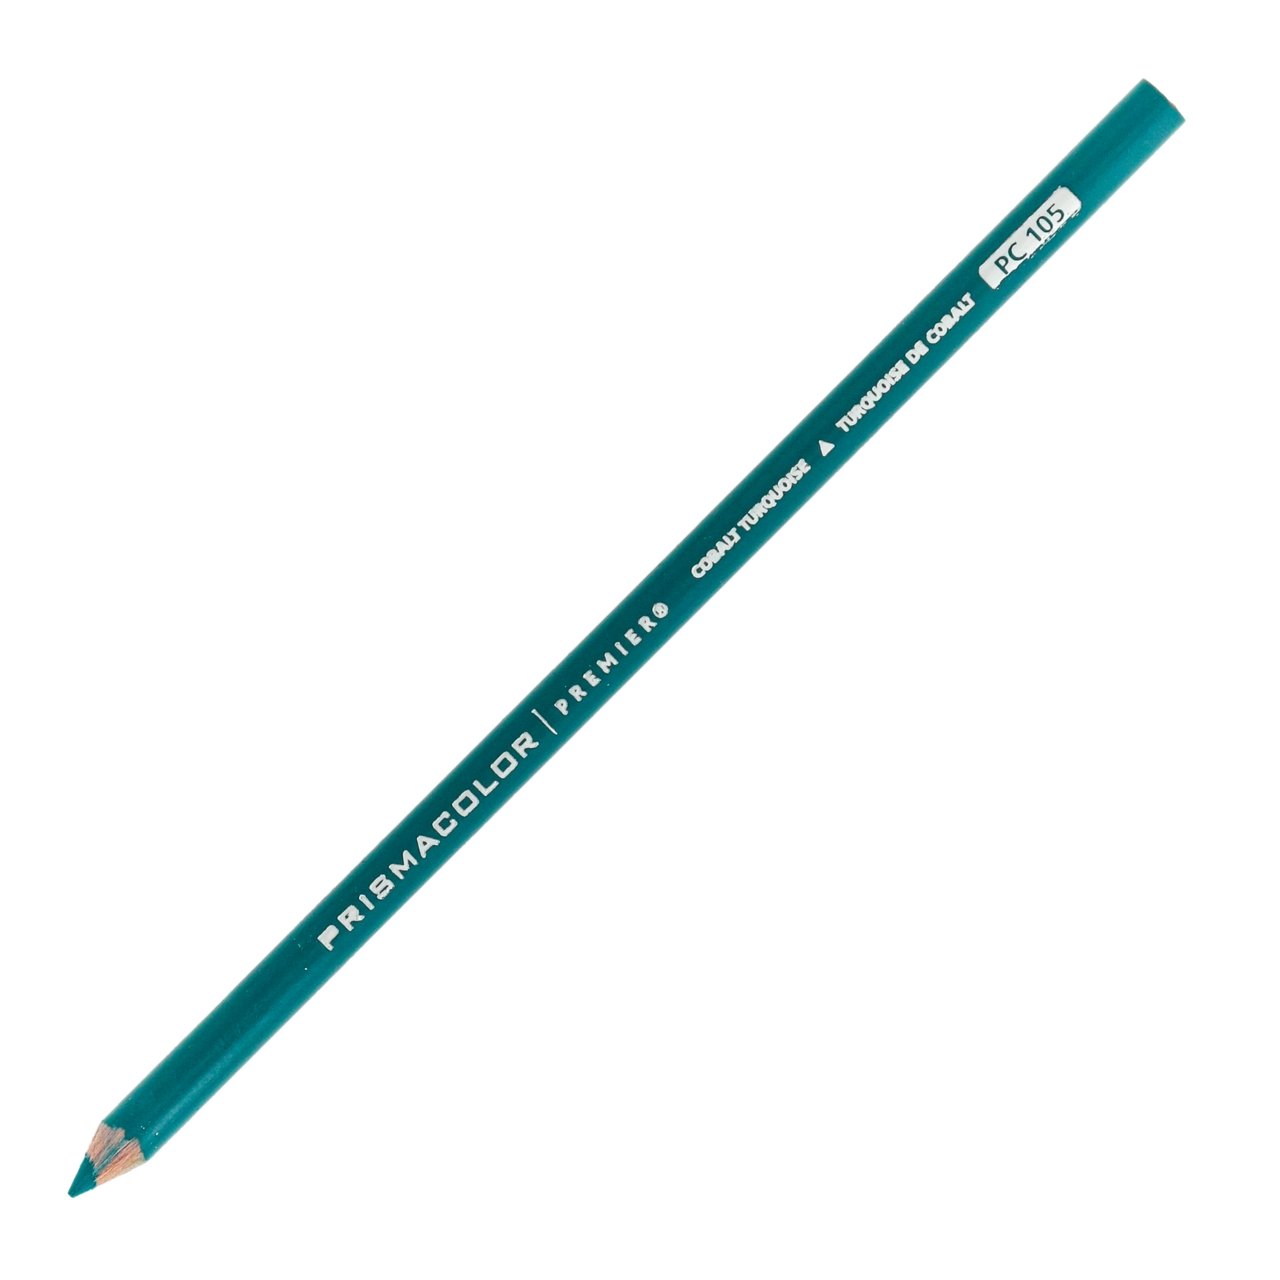 Premier Turquoise Graphite Pencils